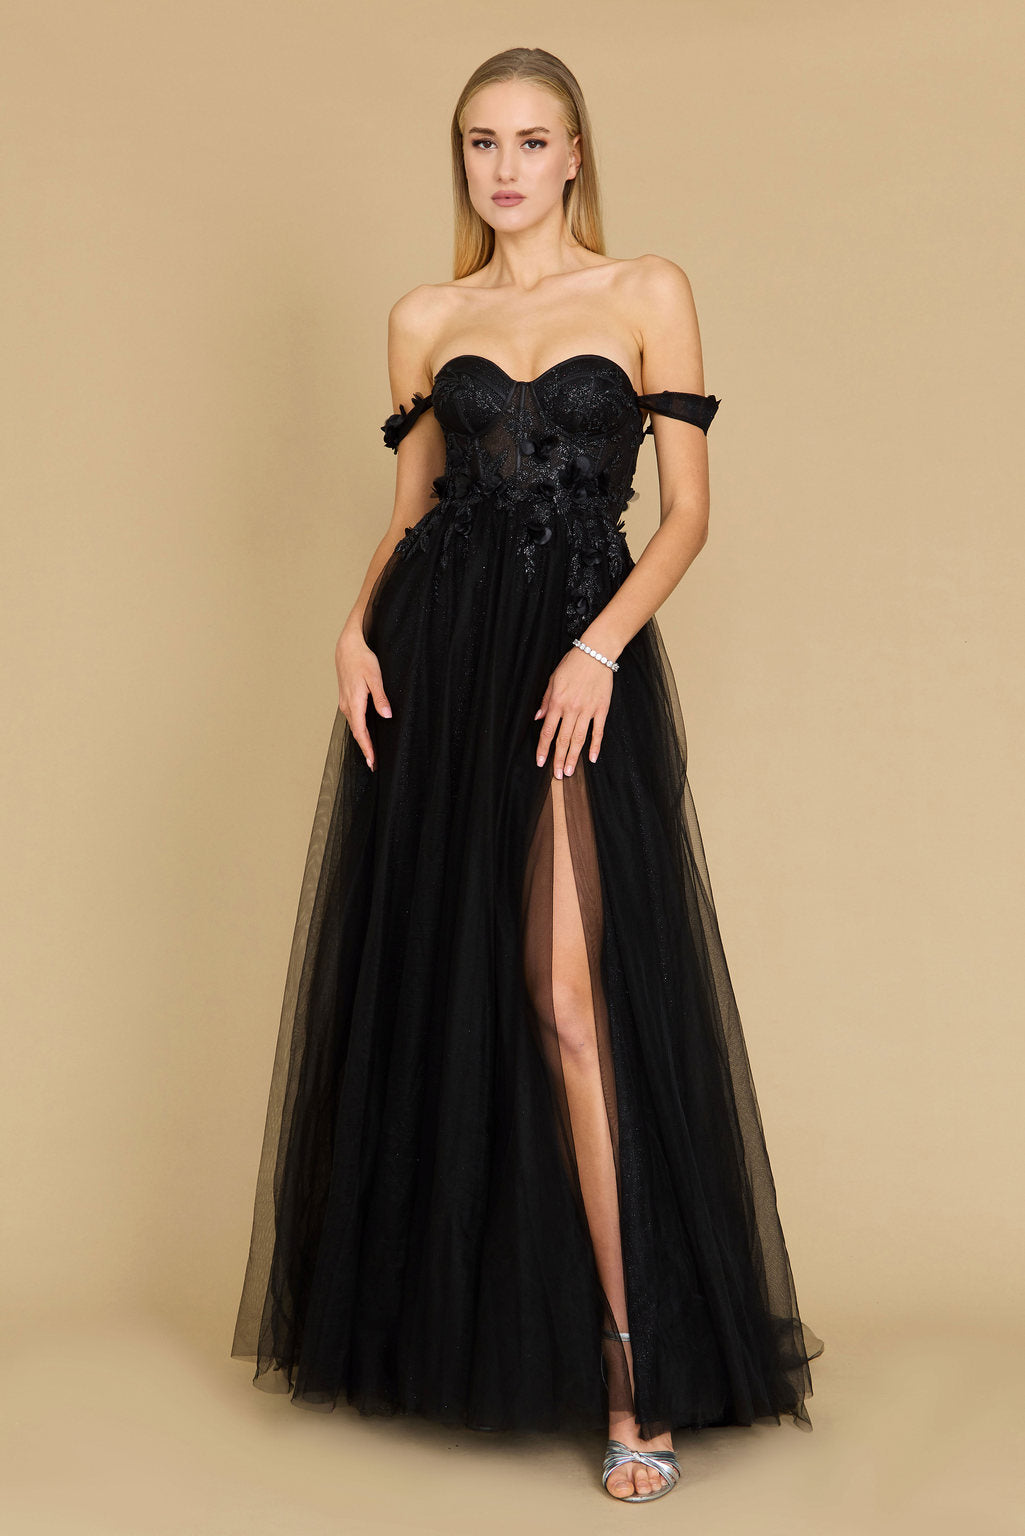 Black Wedding Dresses Long Off Shoulder Floral Black Wedding Dress Black